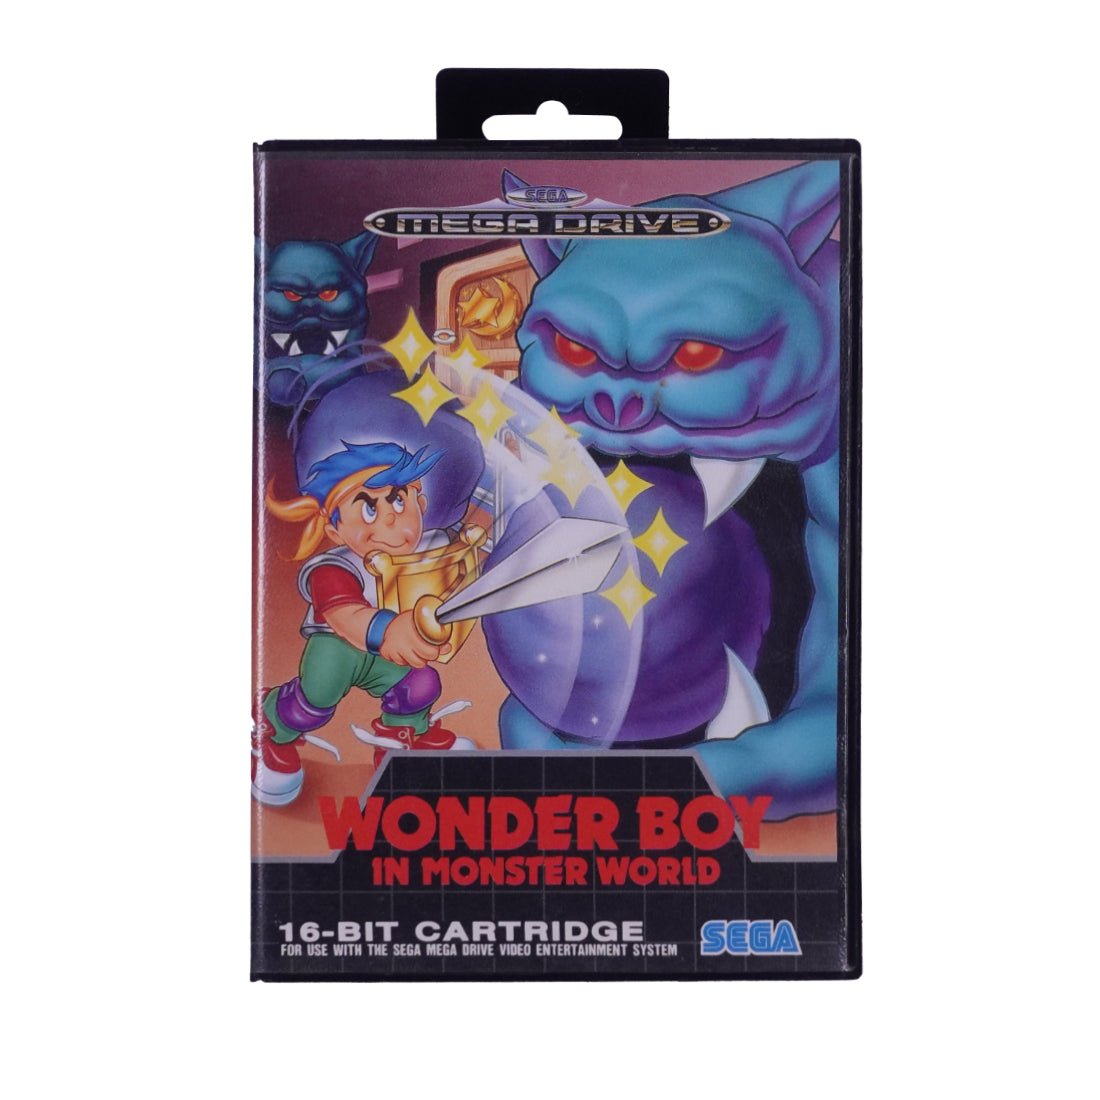 (Pre-Owned) Wonder Boy in Monster World - Sega Mega Drive - Store 974 | ستور ٩٧٤